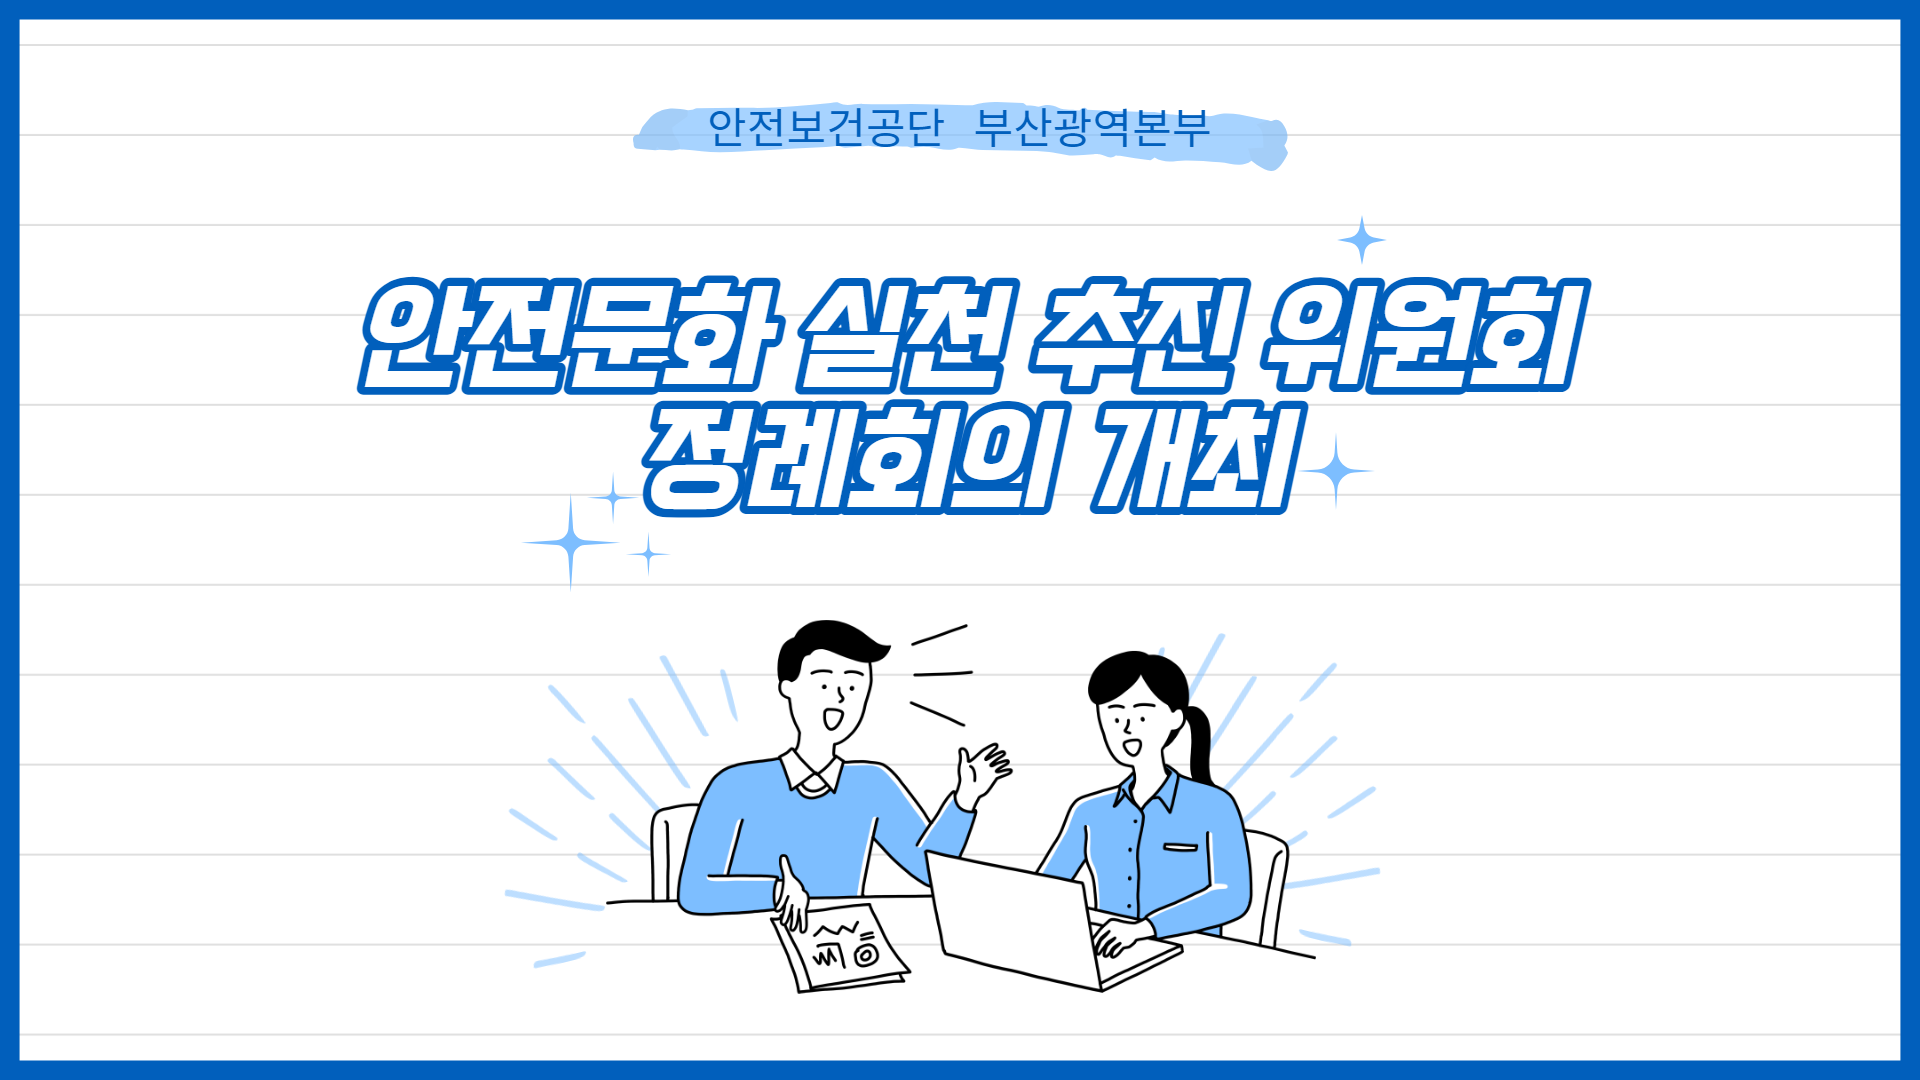 [부산] 안전문화 확산 정례회의 개최